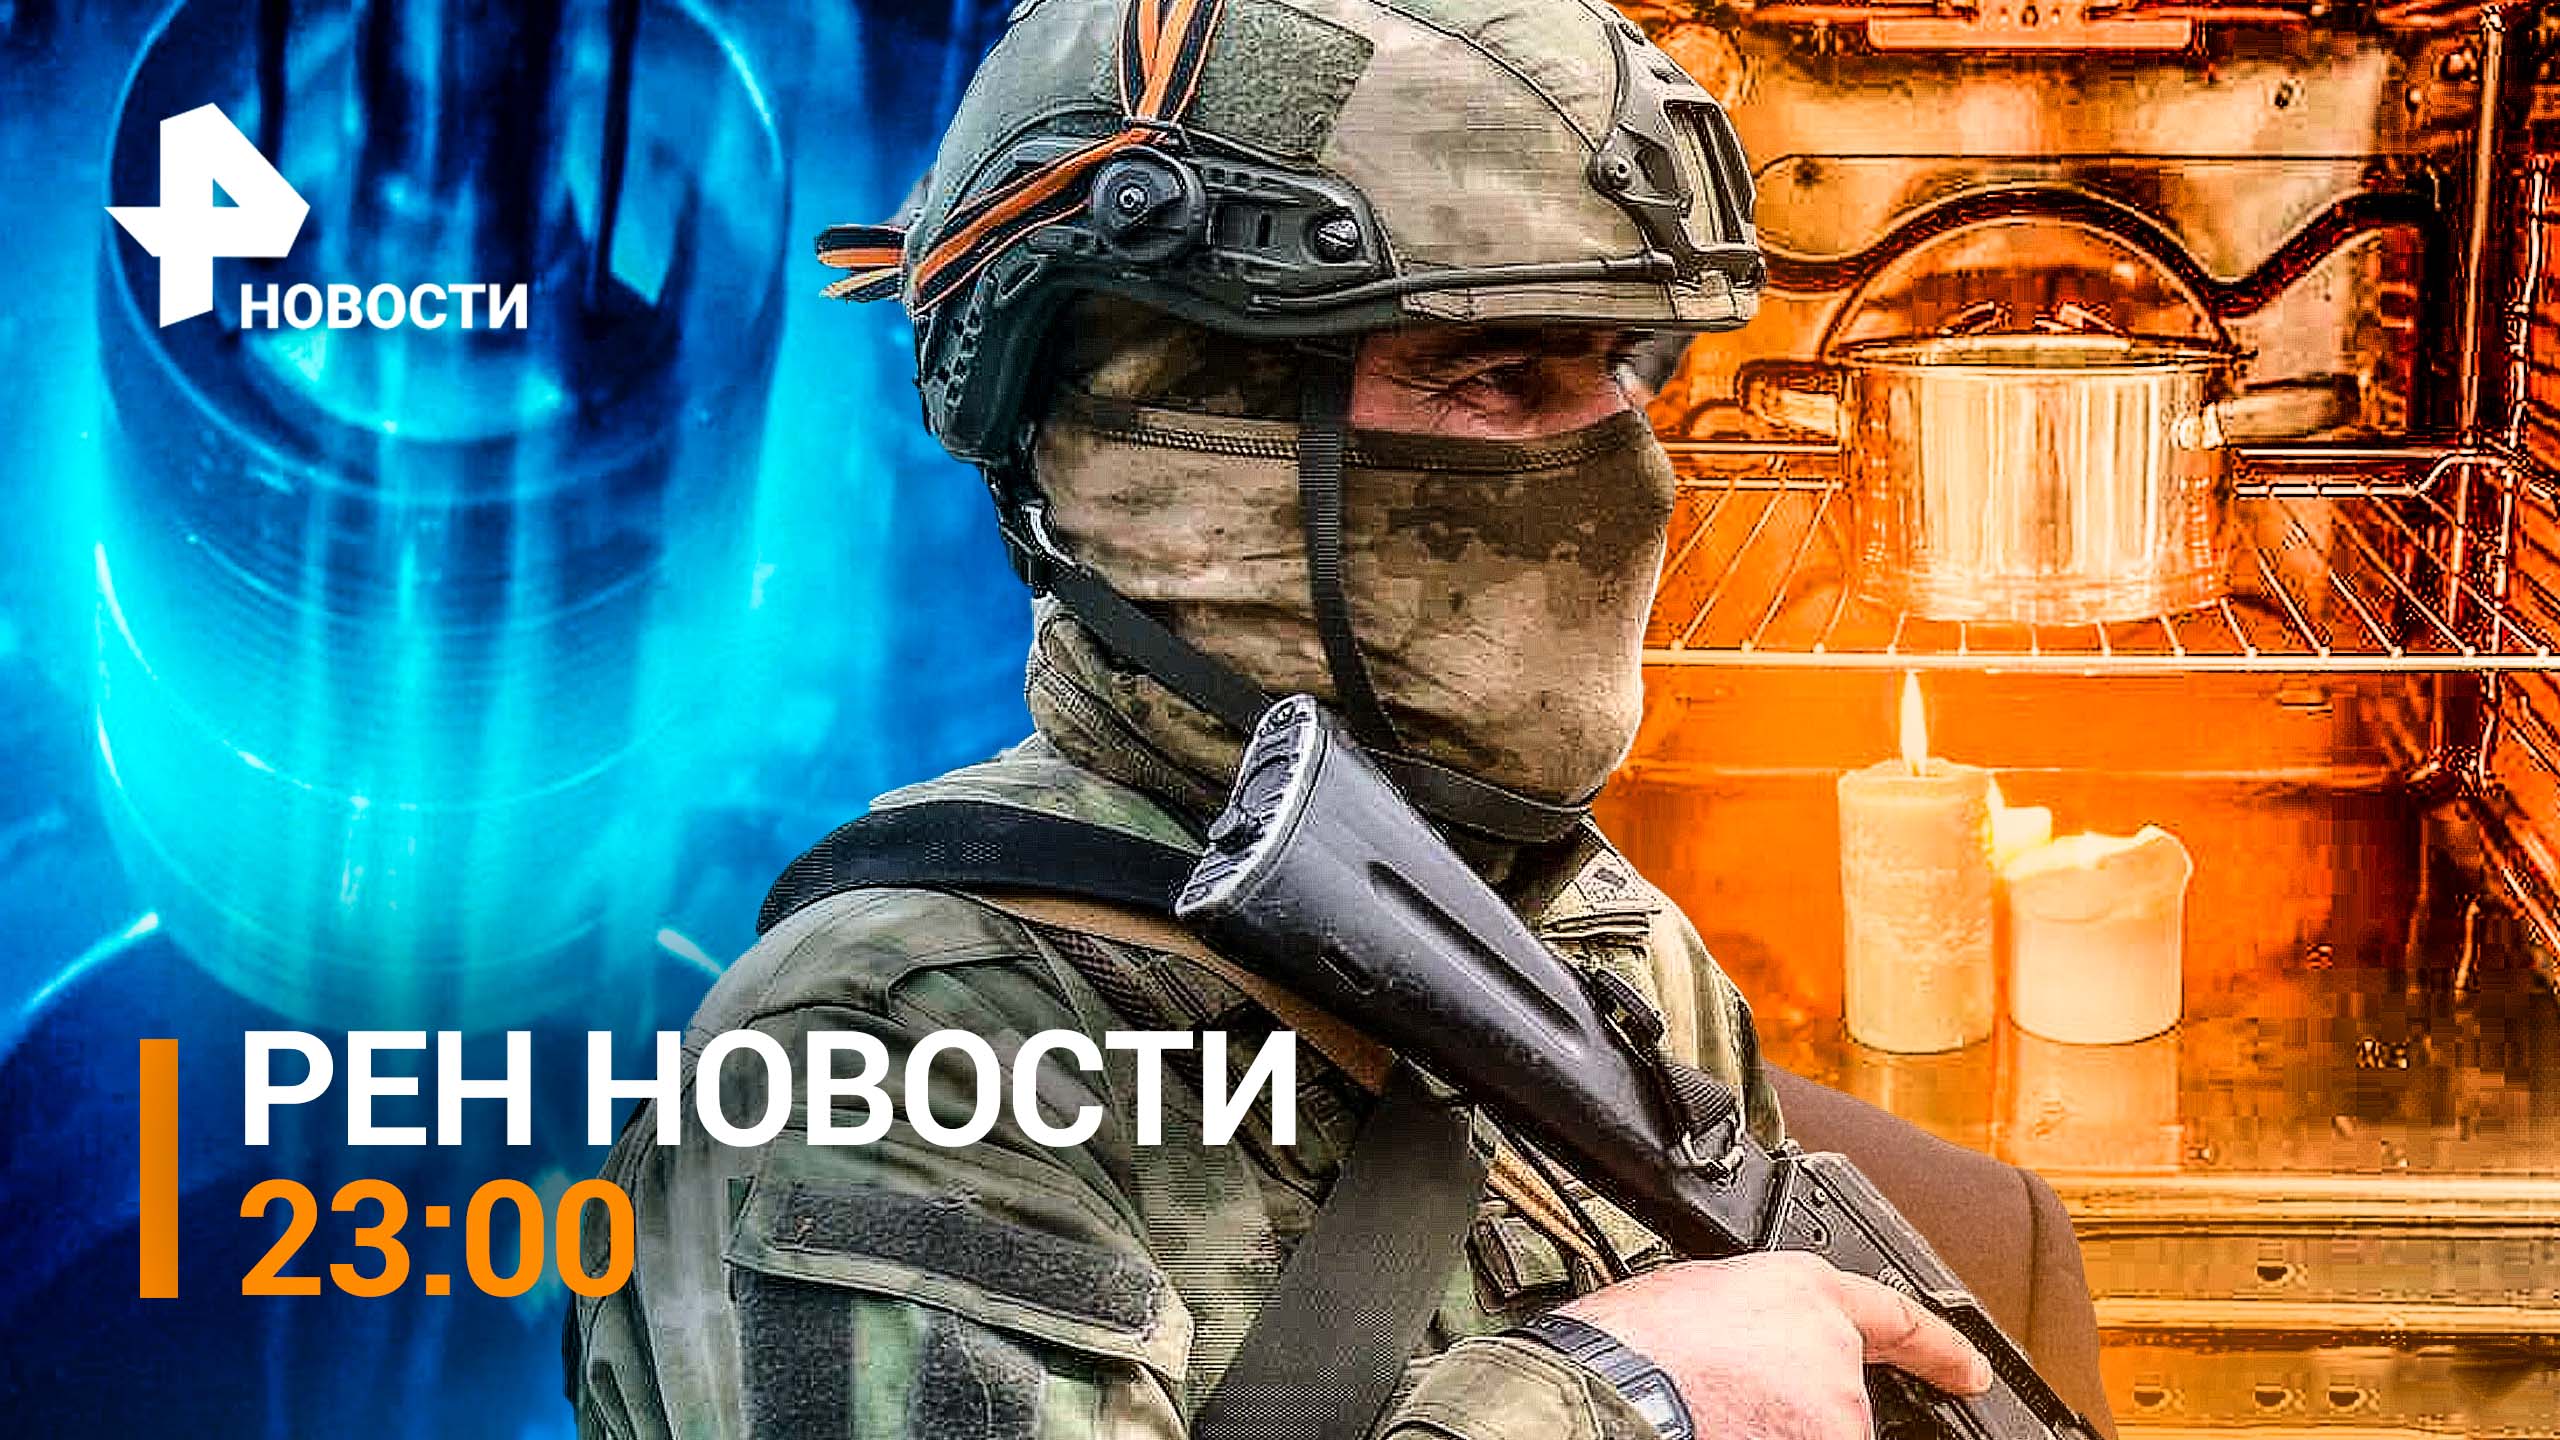 Российская армия пошла в наступление от Лисичанска - снова на Славянск / РЕН НОВОСТИ 23:00 от 31.10